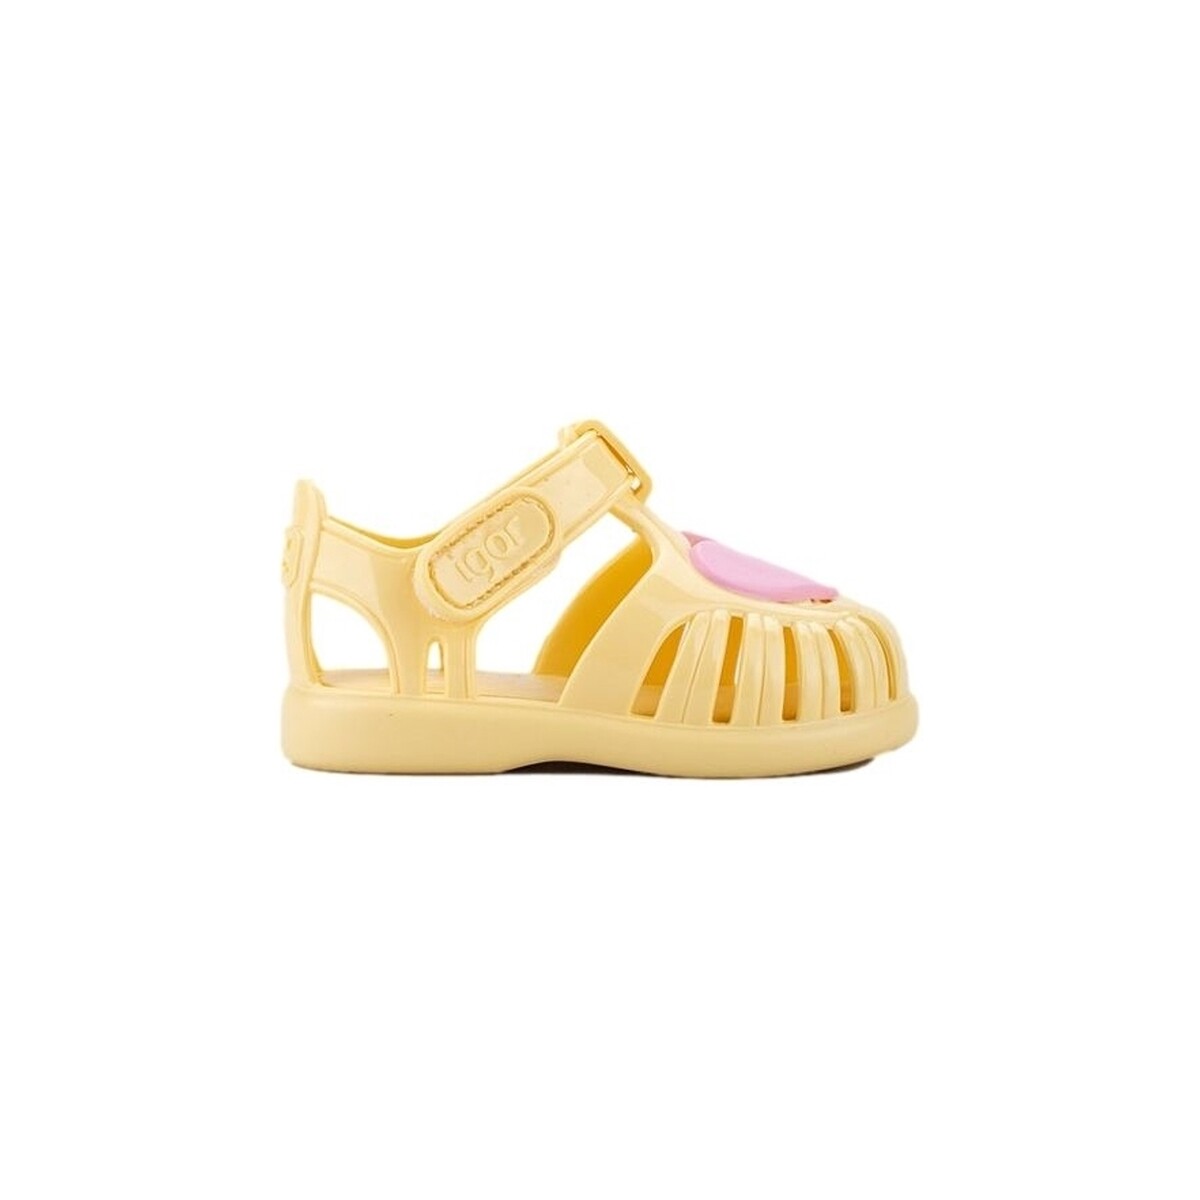 Παπούτσια Παιδί Σανδάλια / Πέδιλα IGOR Baby Sandals Tobby Gloss Love - Vanilla Yellow